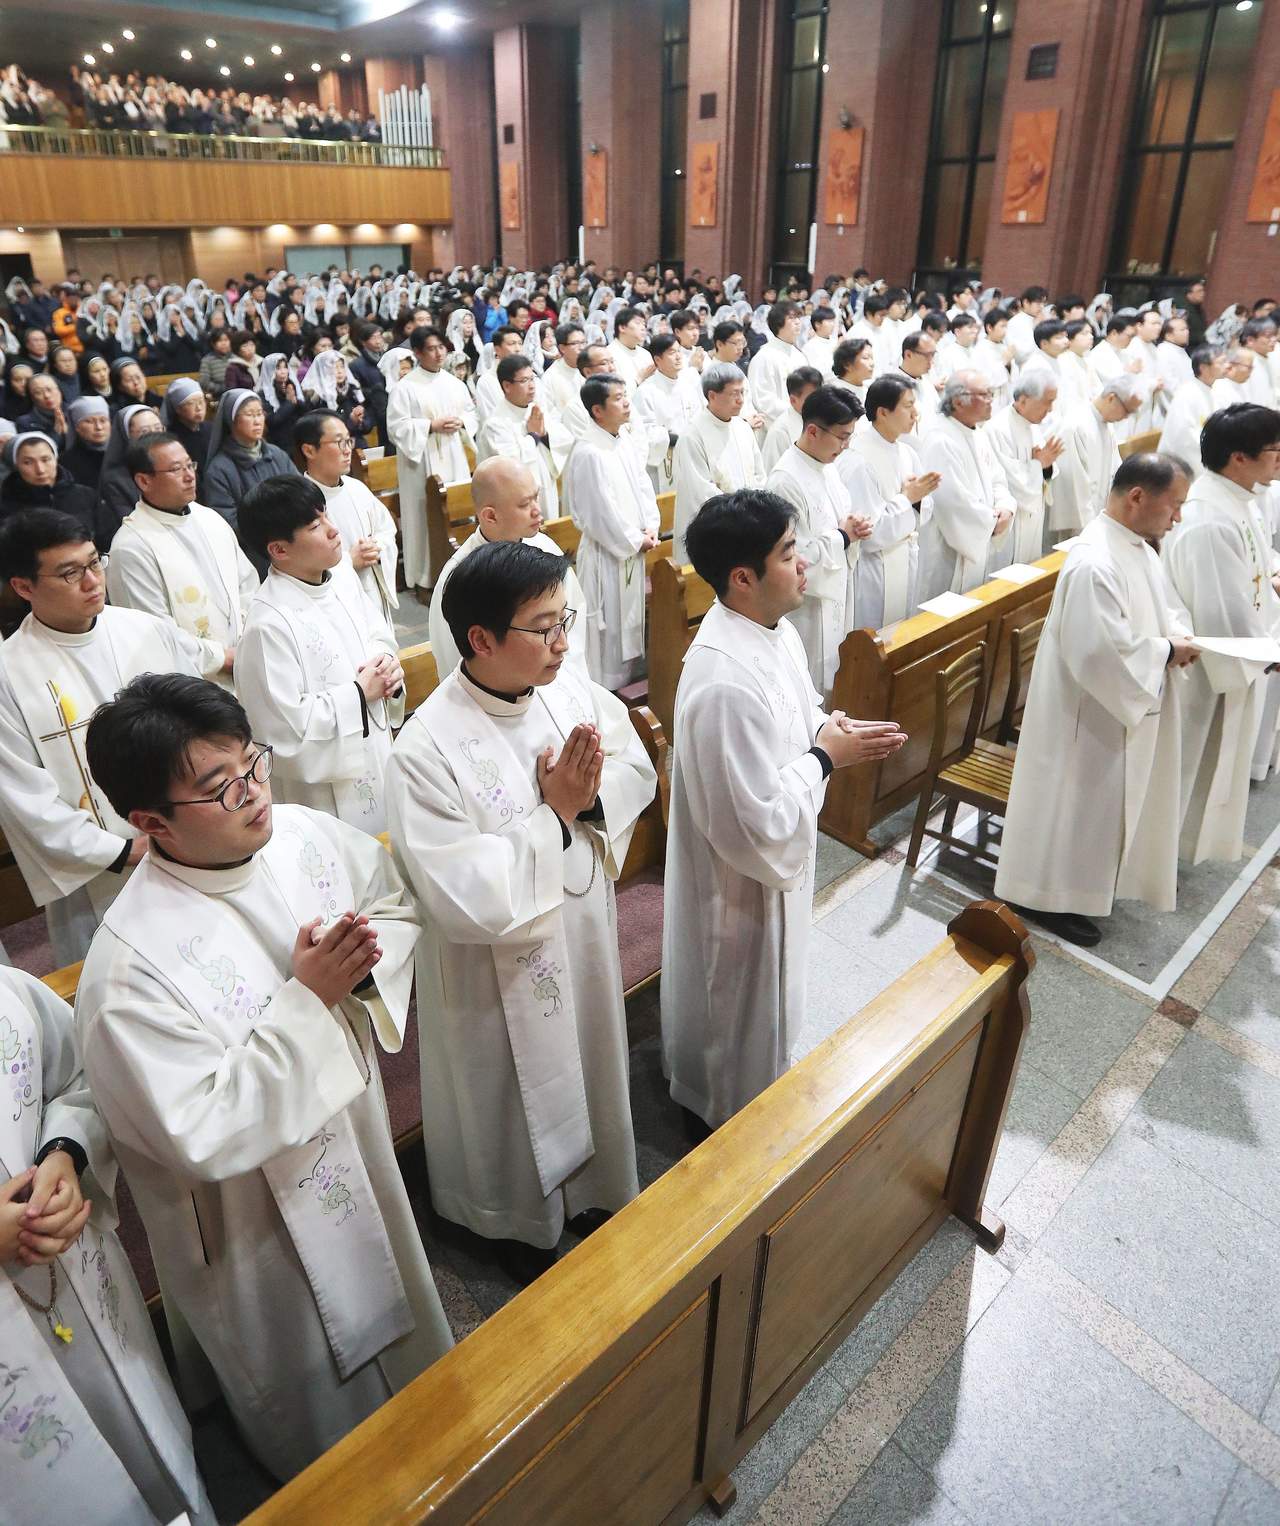 La Arquidiócesis de Seúl, en Corea del Sur, anunció hoy que donará unos 50 mil dólares para la atención a los afectados por el terremoto de 8.2 grados. En la imagen, religiosos de Corea del Sur rezan. (ARCHIVO)